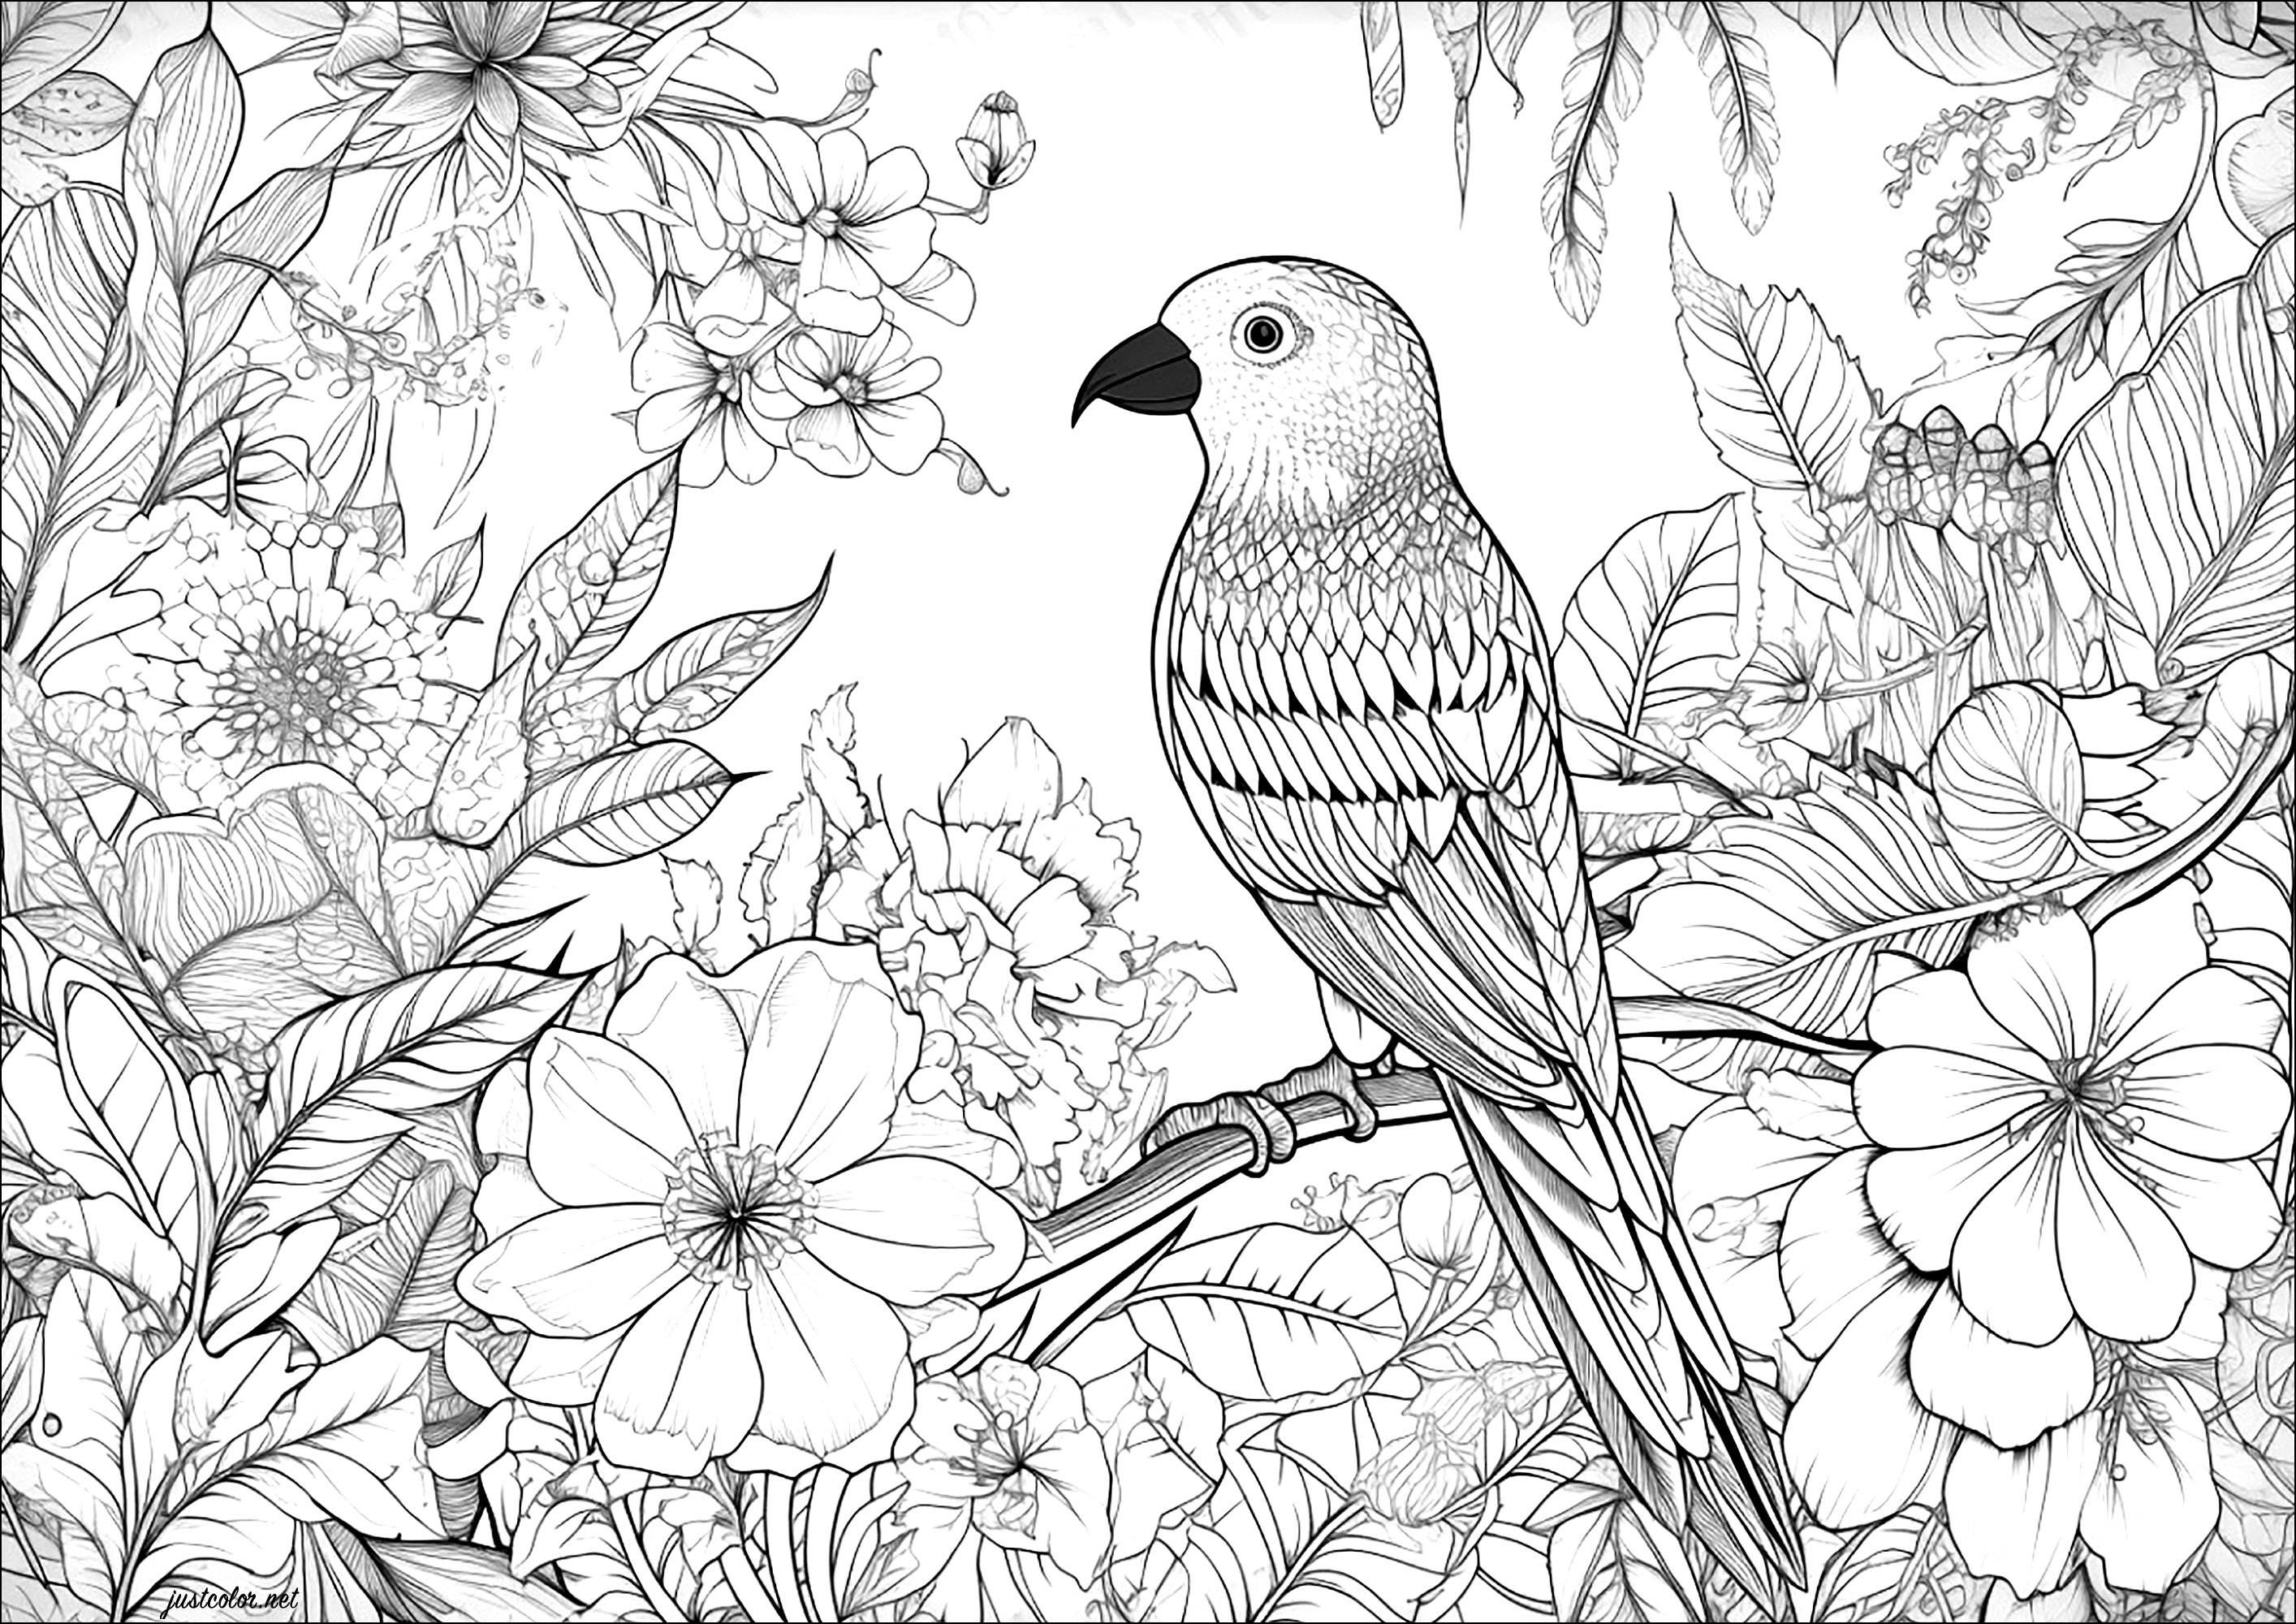 Pássaro bonito e fundo florido. Uma página para colorir com muitos pormenores para colorir, tanto no pássaro como nas flores do fundo.